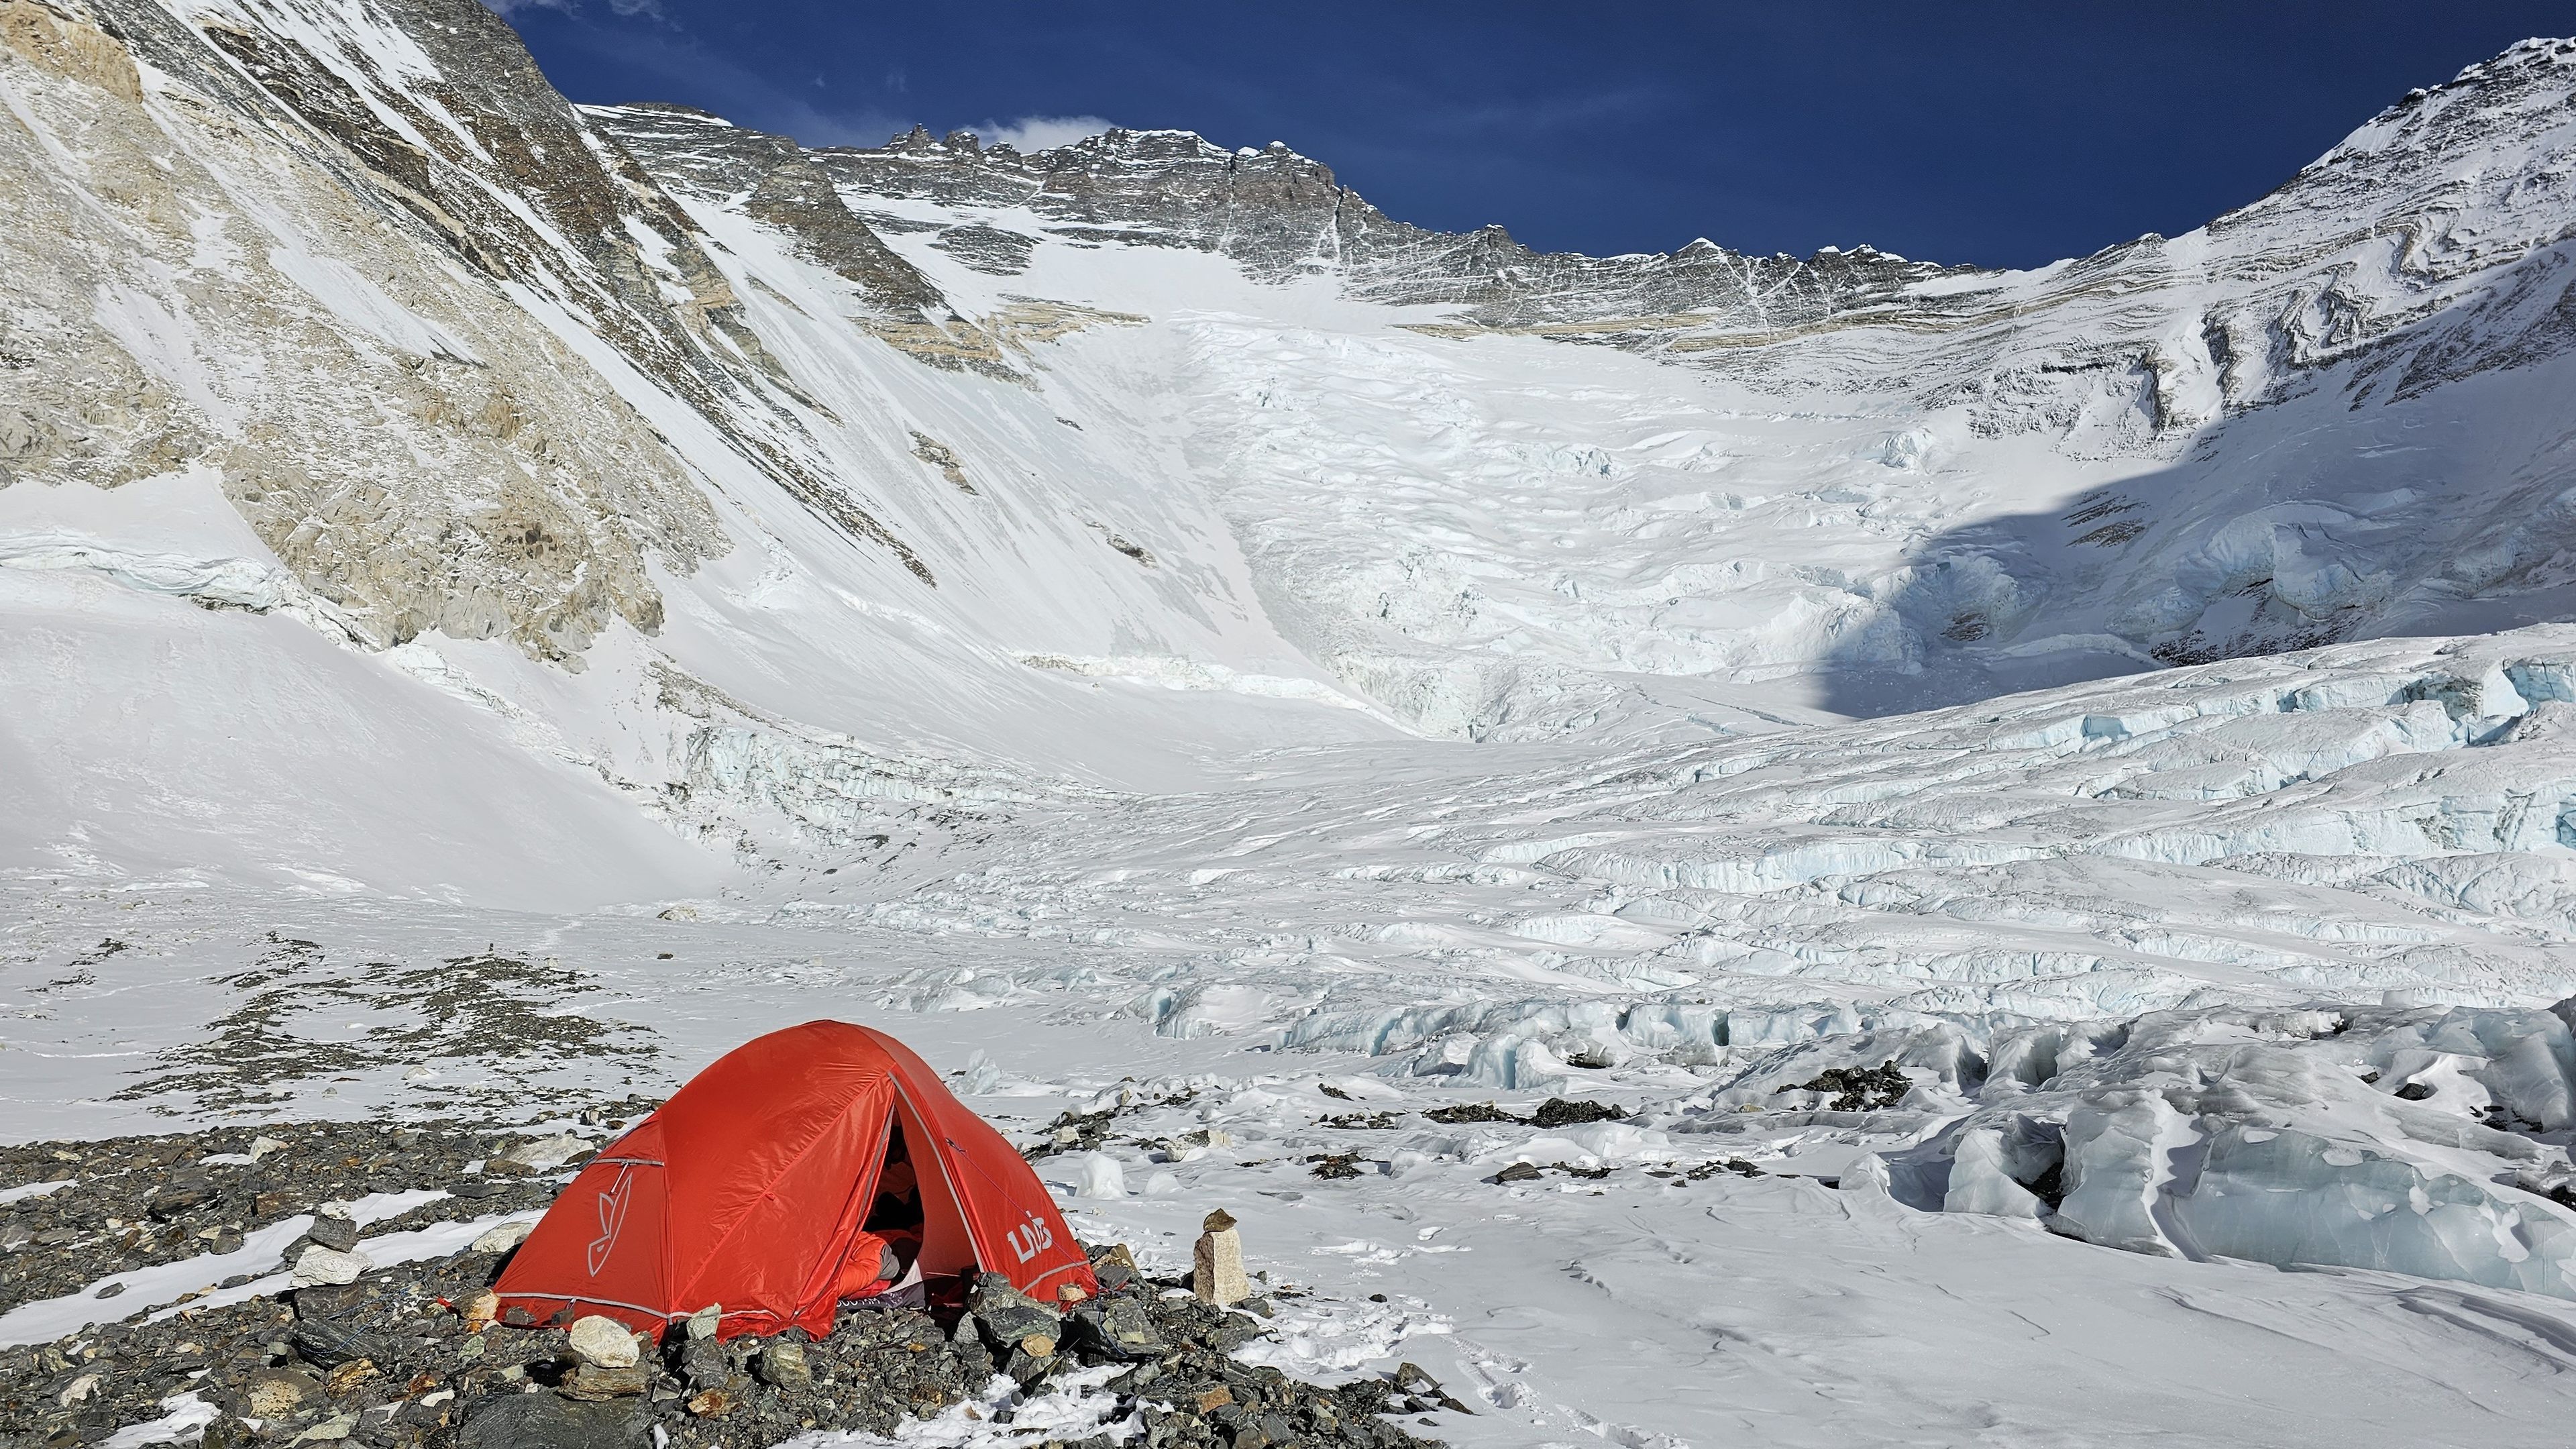 Egyedül a hegyen, vagyis egyelőre senki és semmi sem akadályozza Suhajda Szilárdot az Everesten. (Fotó: Kyocera Everest Expedíció 2023)